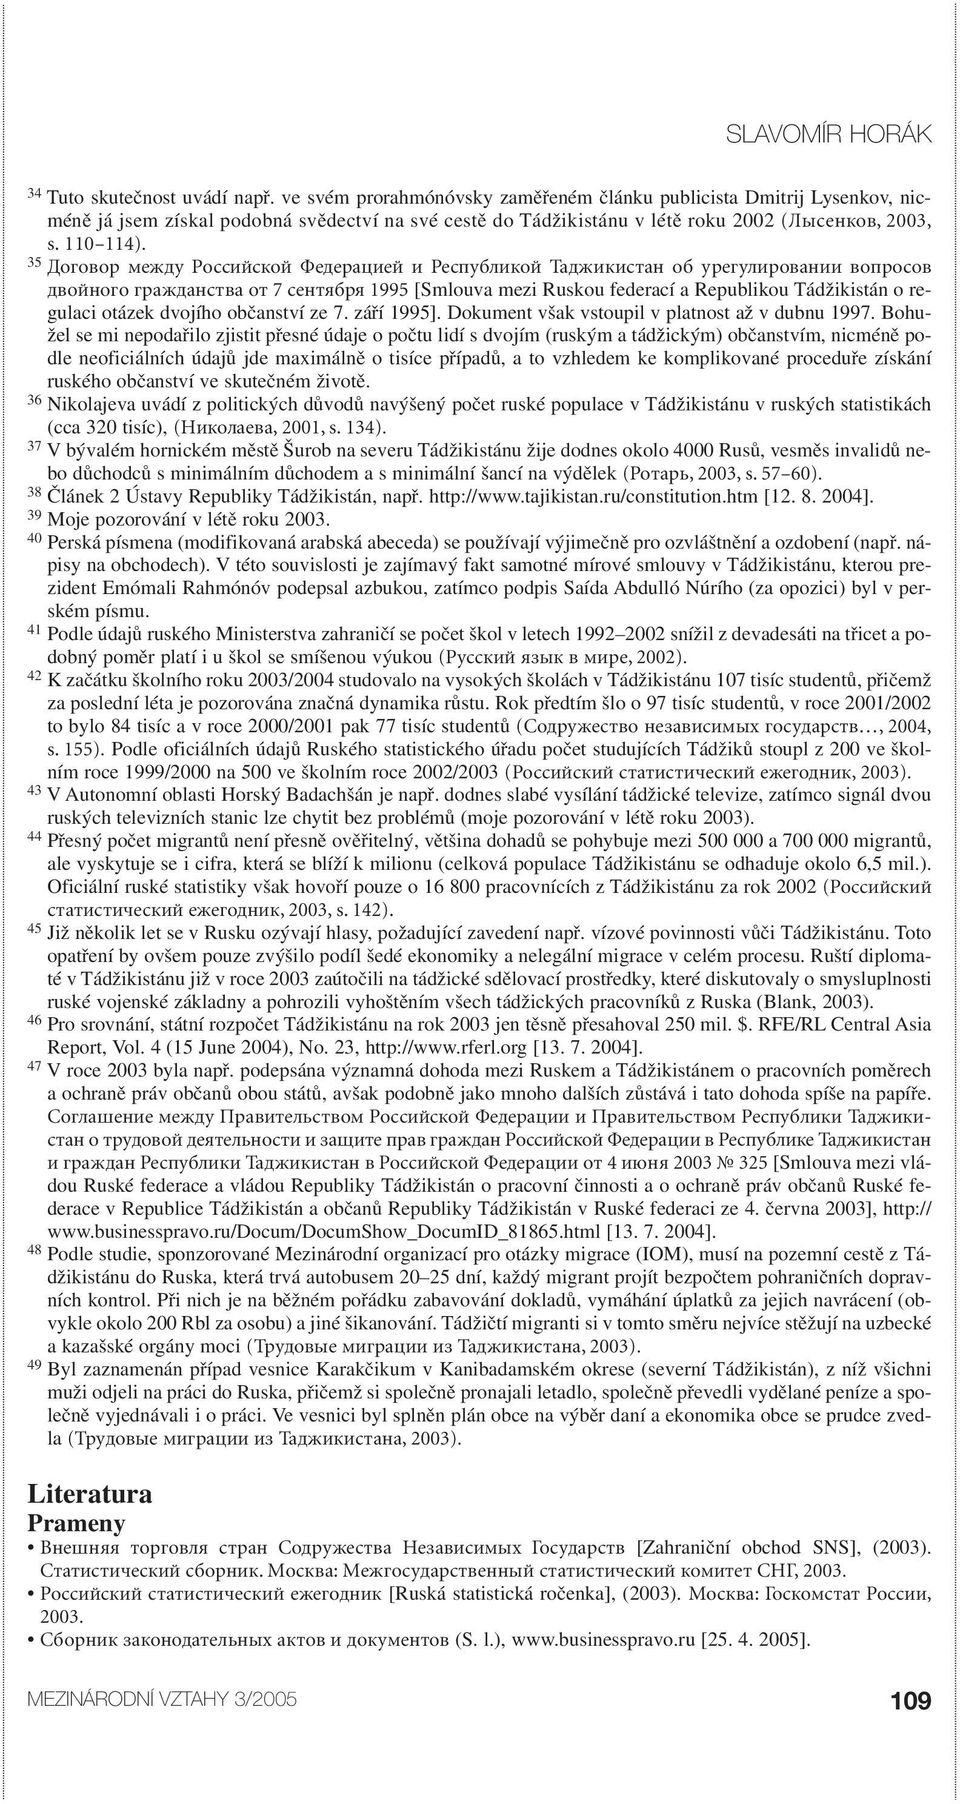 35 Договор между Российской Федерацией и Республикой Таджикистан об урегулировании вопросов двойного гражданства от 7 сентября 1995 [Smlouva mezi Ruskou federací a Republikou Tádžikistán o regulaci